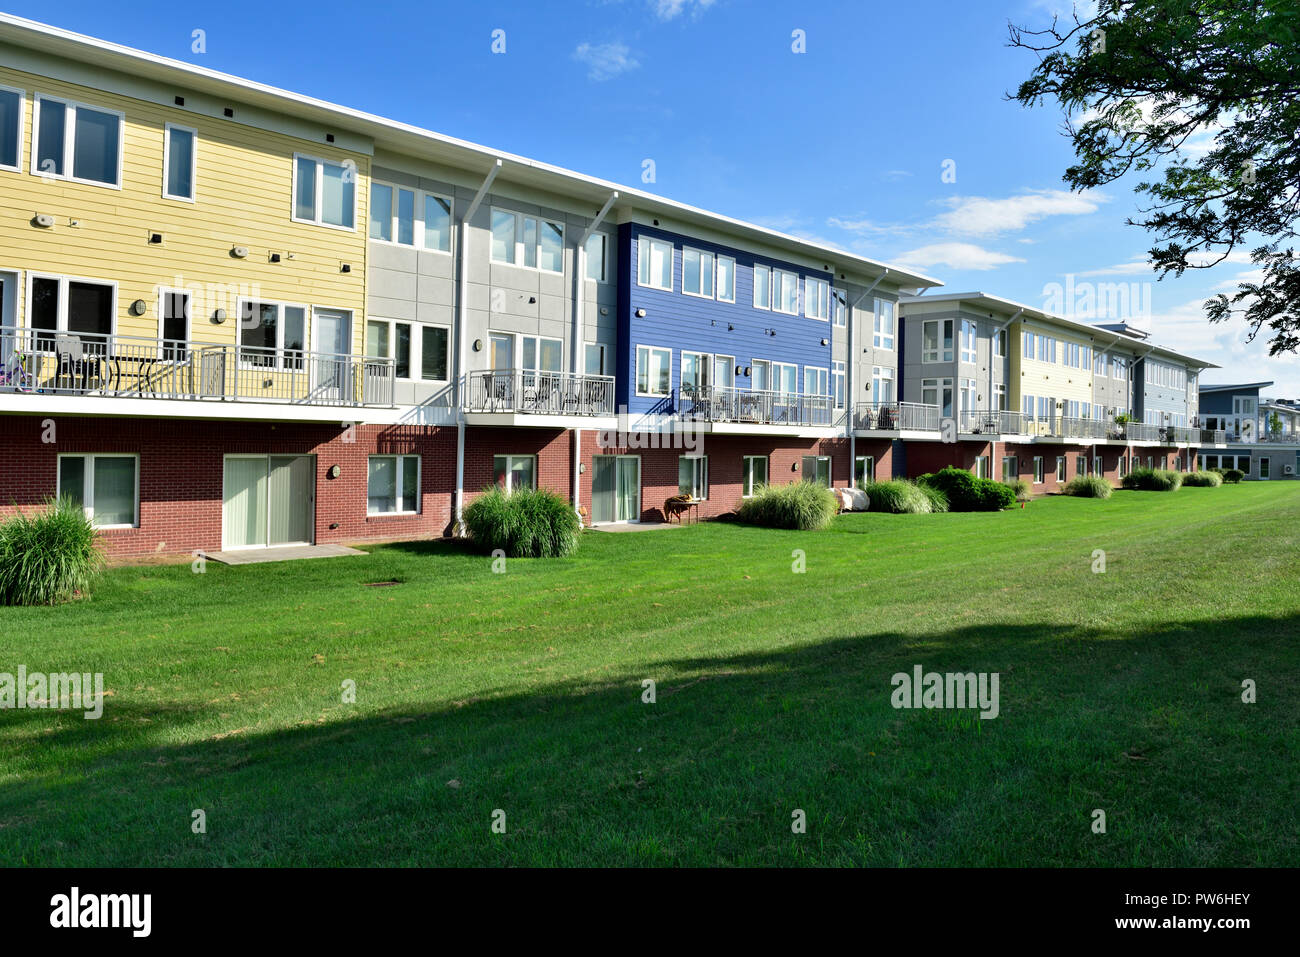 Moderno apartamento (Erie Harbour Apartments) edificios a lo largo del río Genesee en Rochester NY, EE.UU. Foto de stock